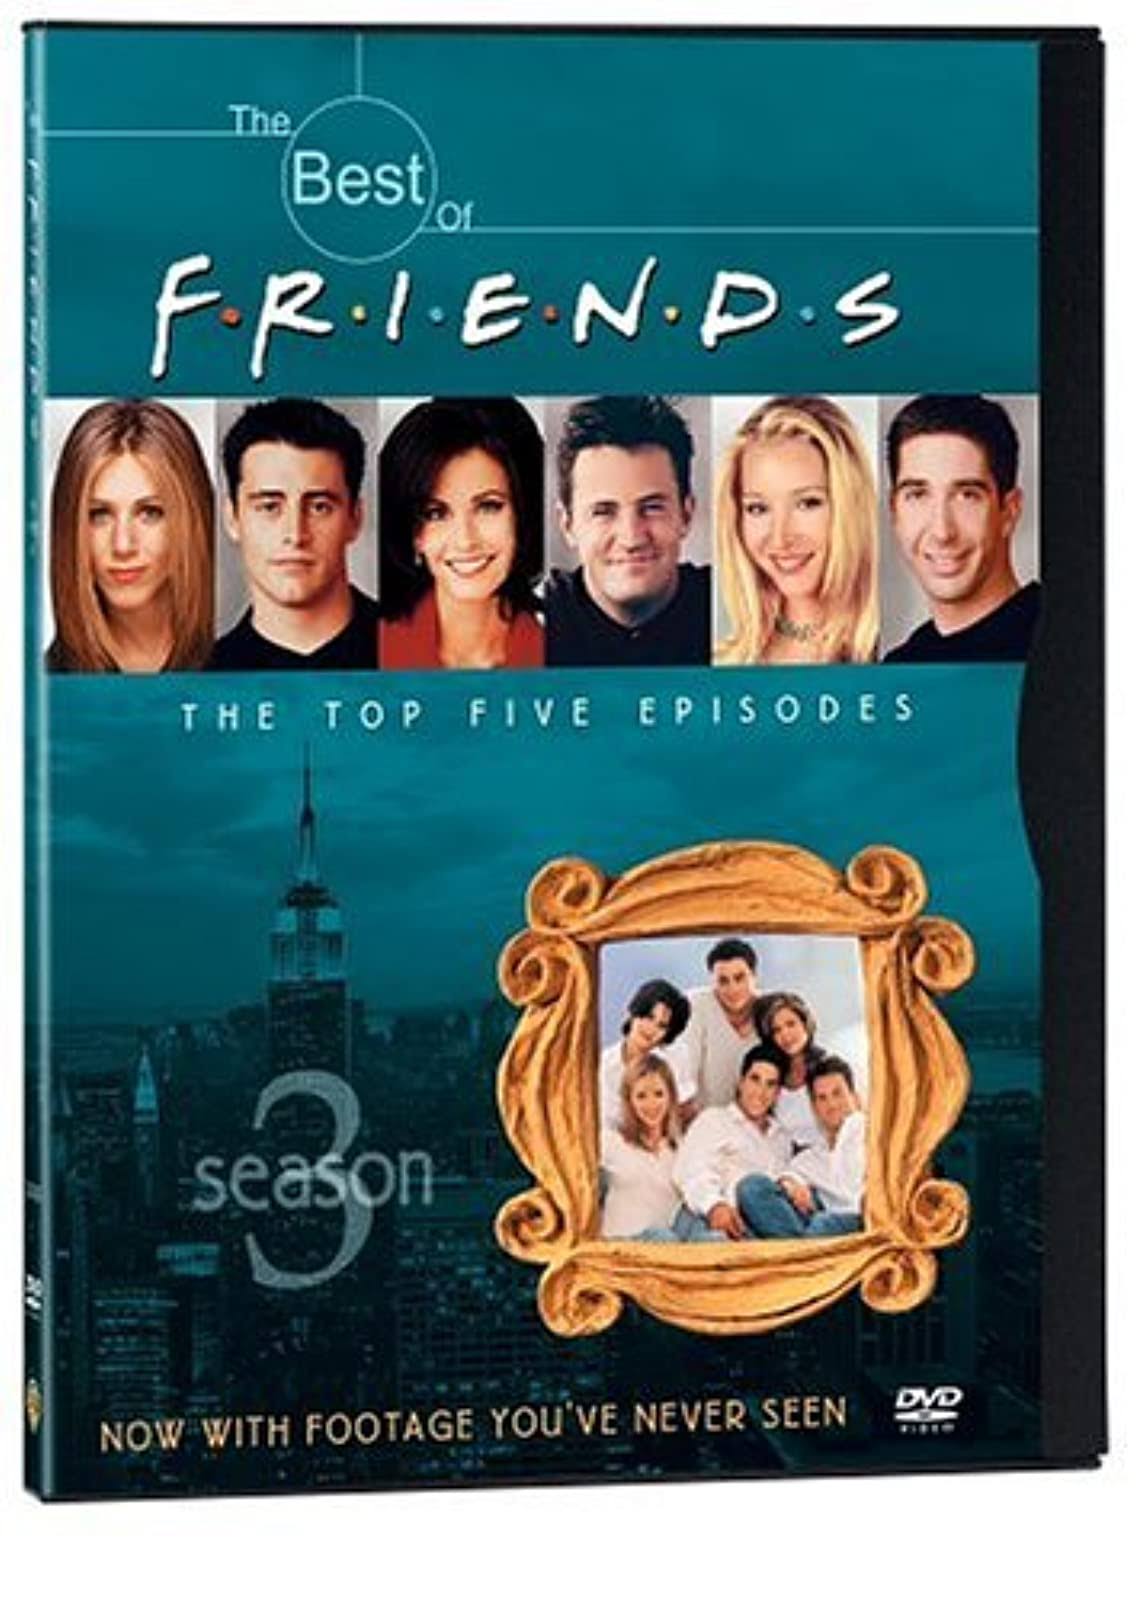 The Best of Friends: Season 3 DVD